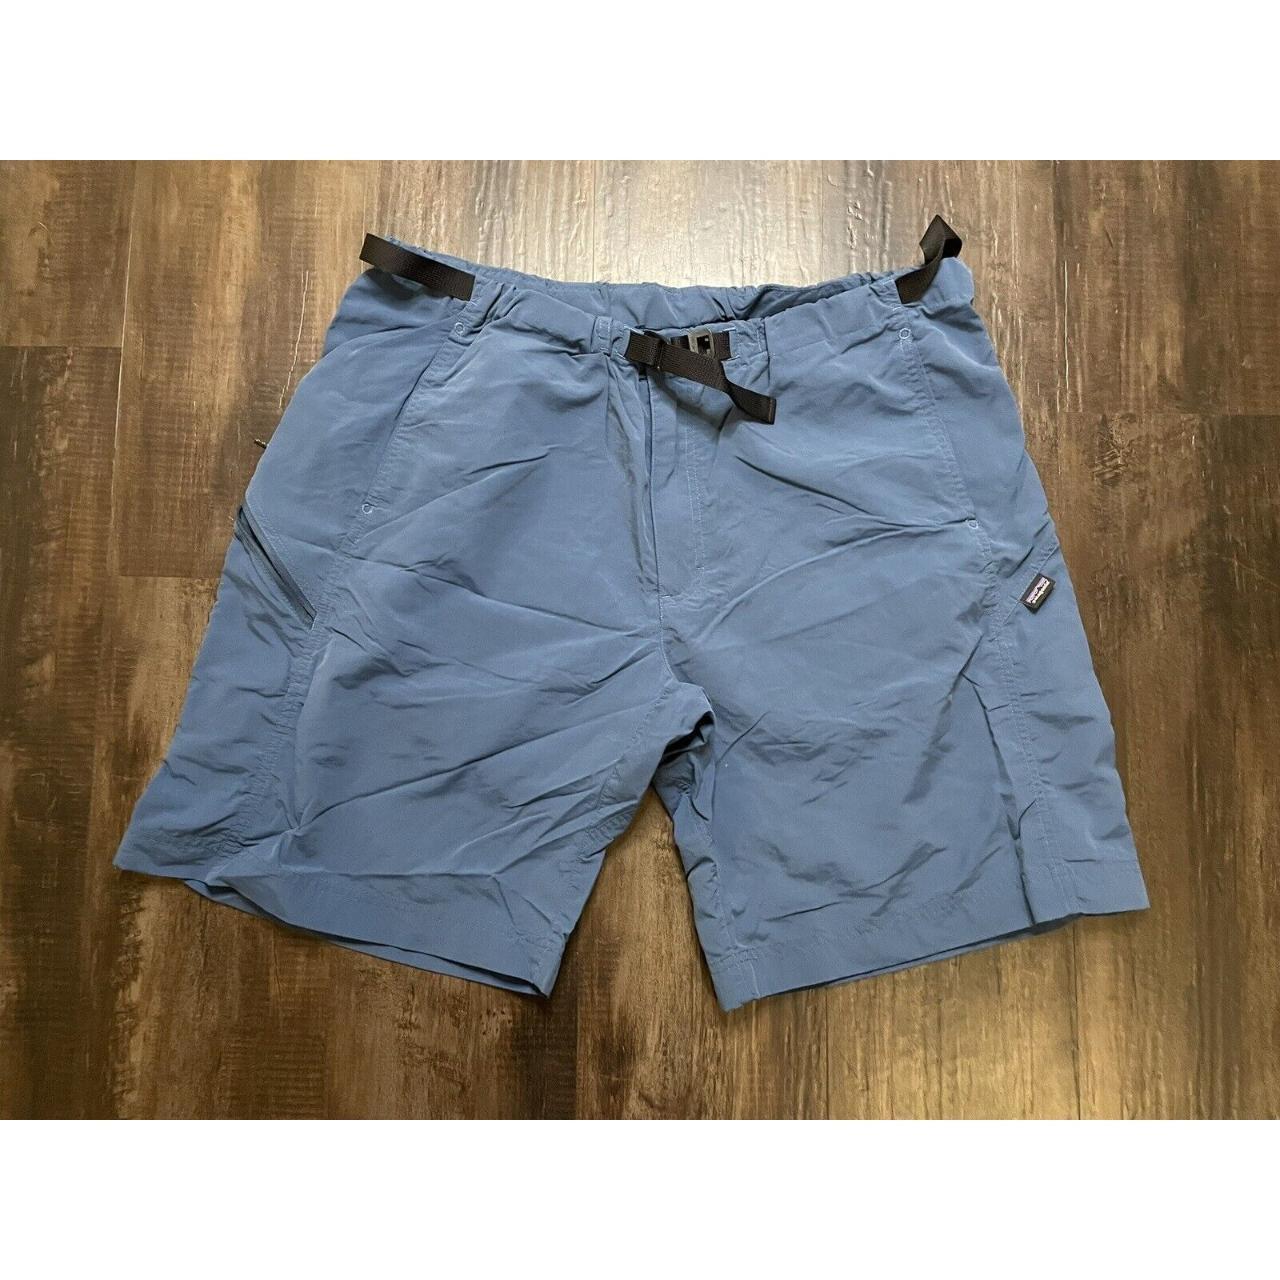 Patagonia Men’s Blue Nylon Belted Pocket Shorts Size... - Depop